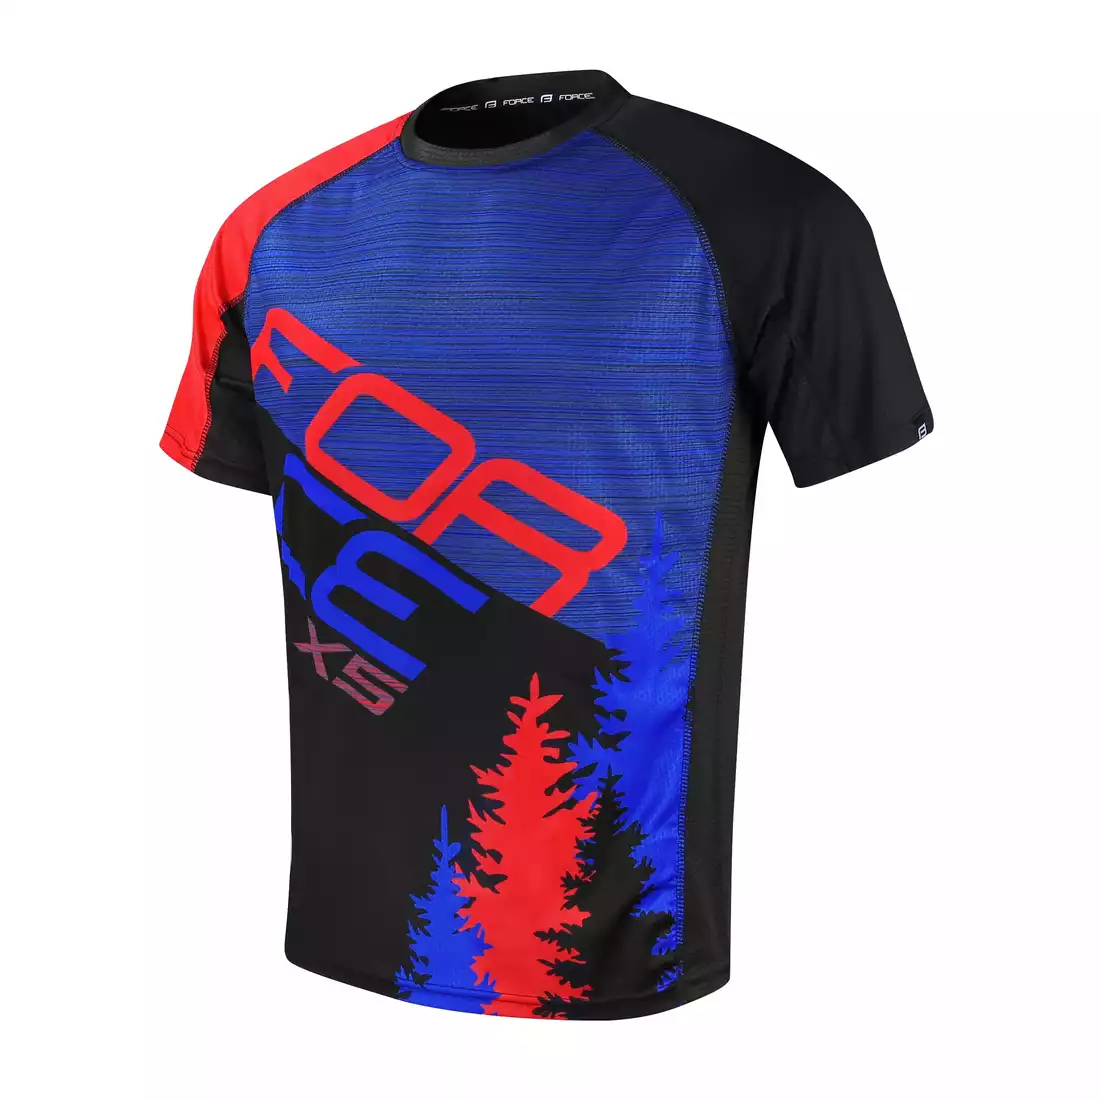 FORCE MTB X5 męska luźna koszulka rowerowa, czarny-czerwony-niebieski  9001526